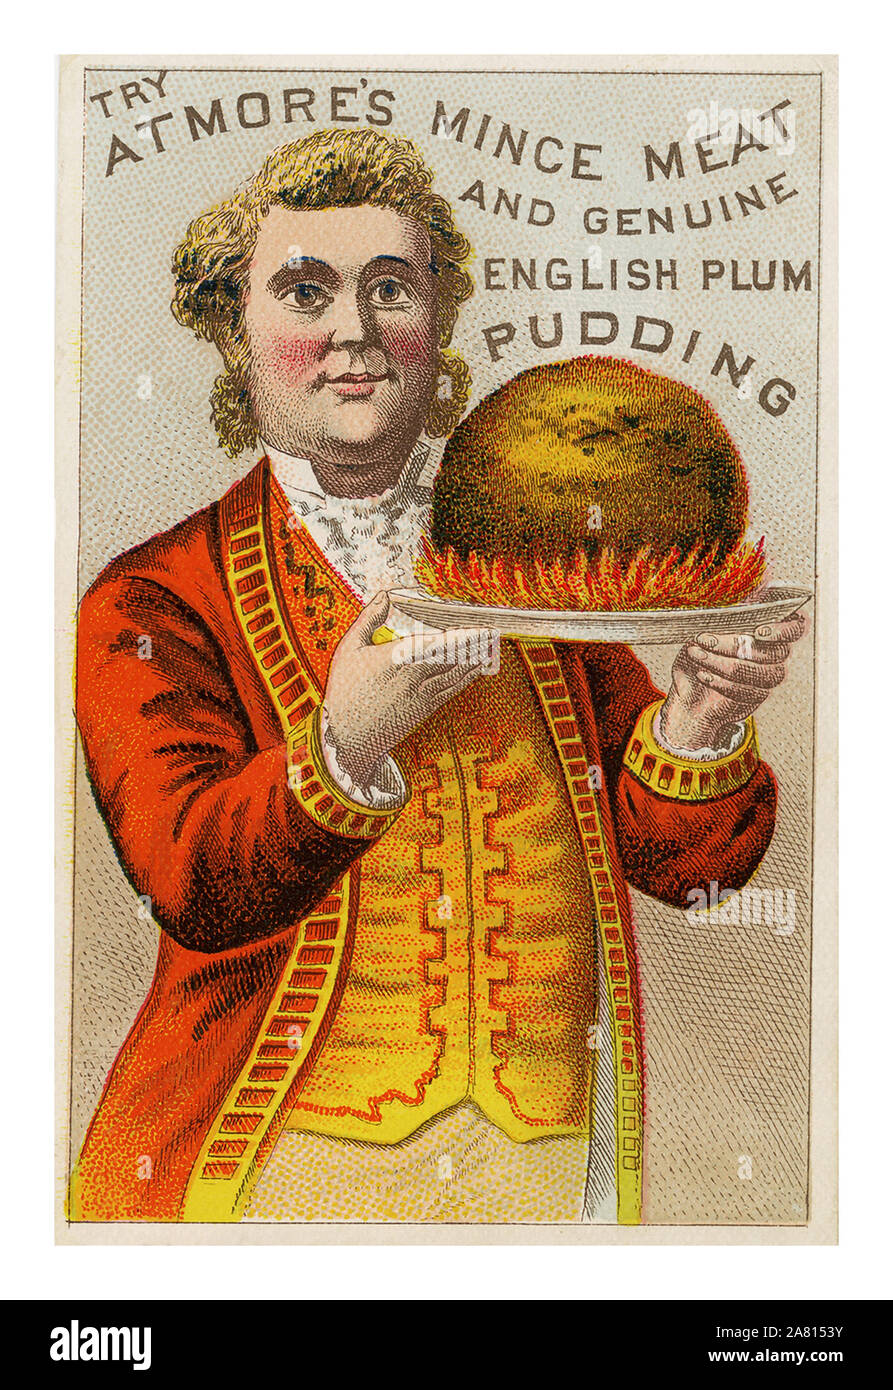 1800's Vintage Victorian Plum-pudding de Noël publicité de promotion du commerce de la viande hachée et Atmore véritable Plum-pudding anglais. L'homme au service du flaming plum-pudding est vêtue d'une veste rouge et jaune vif et de l'enveloppe servant de serveur Banque D'Images